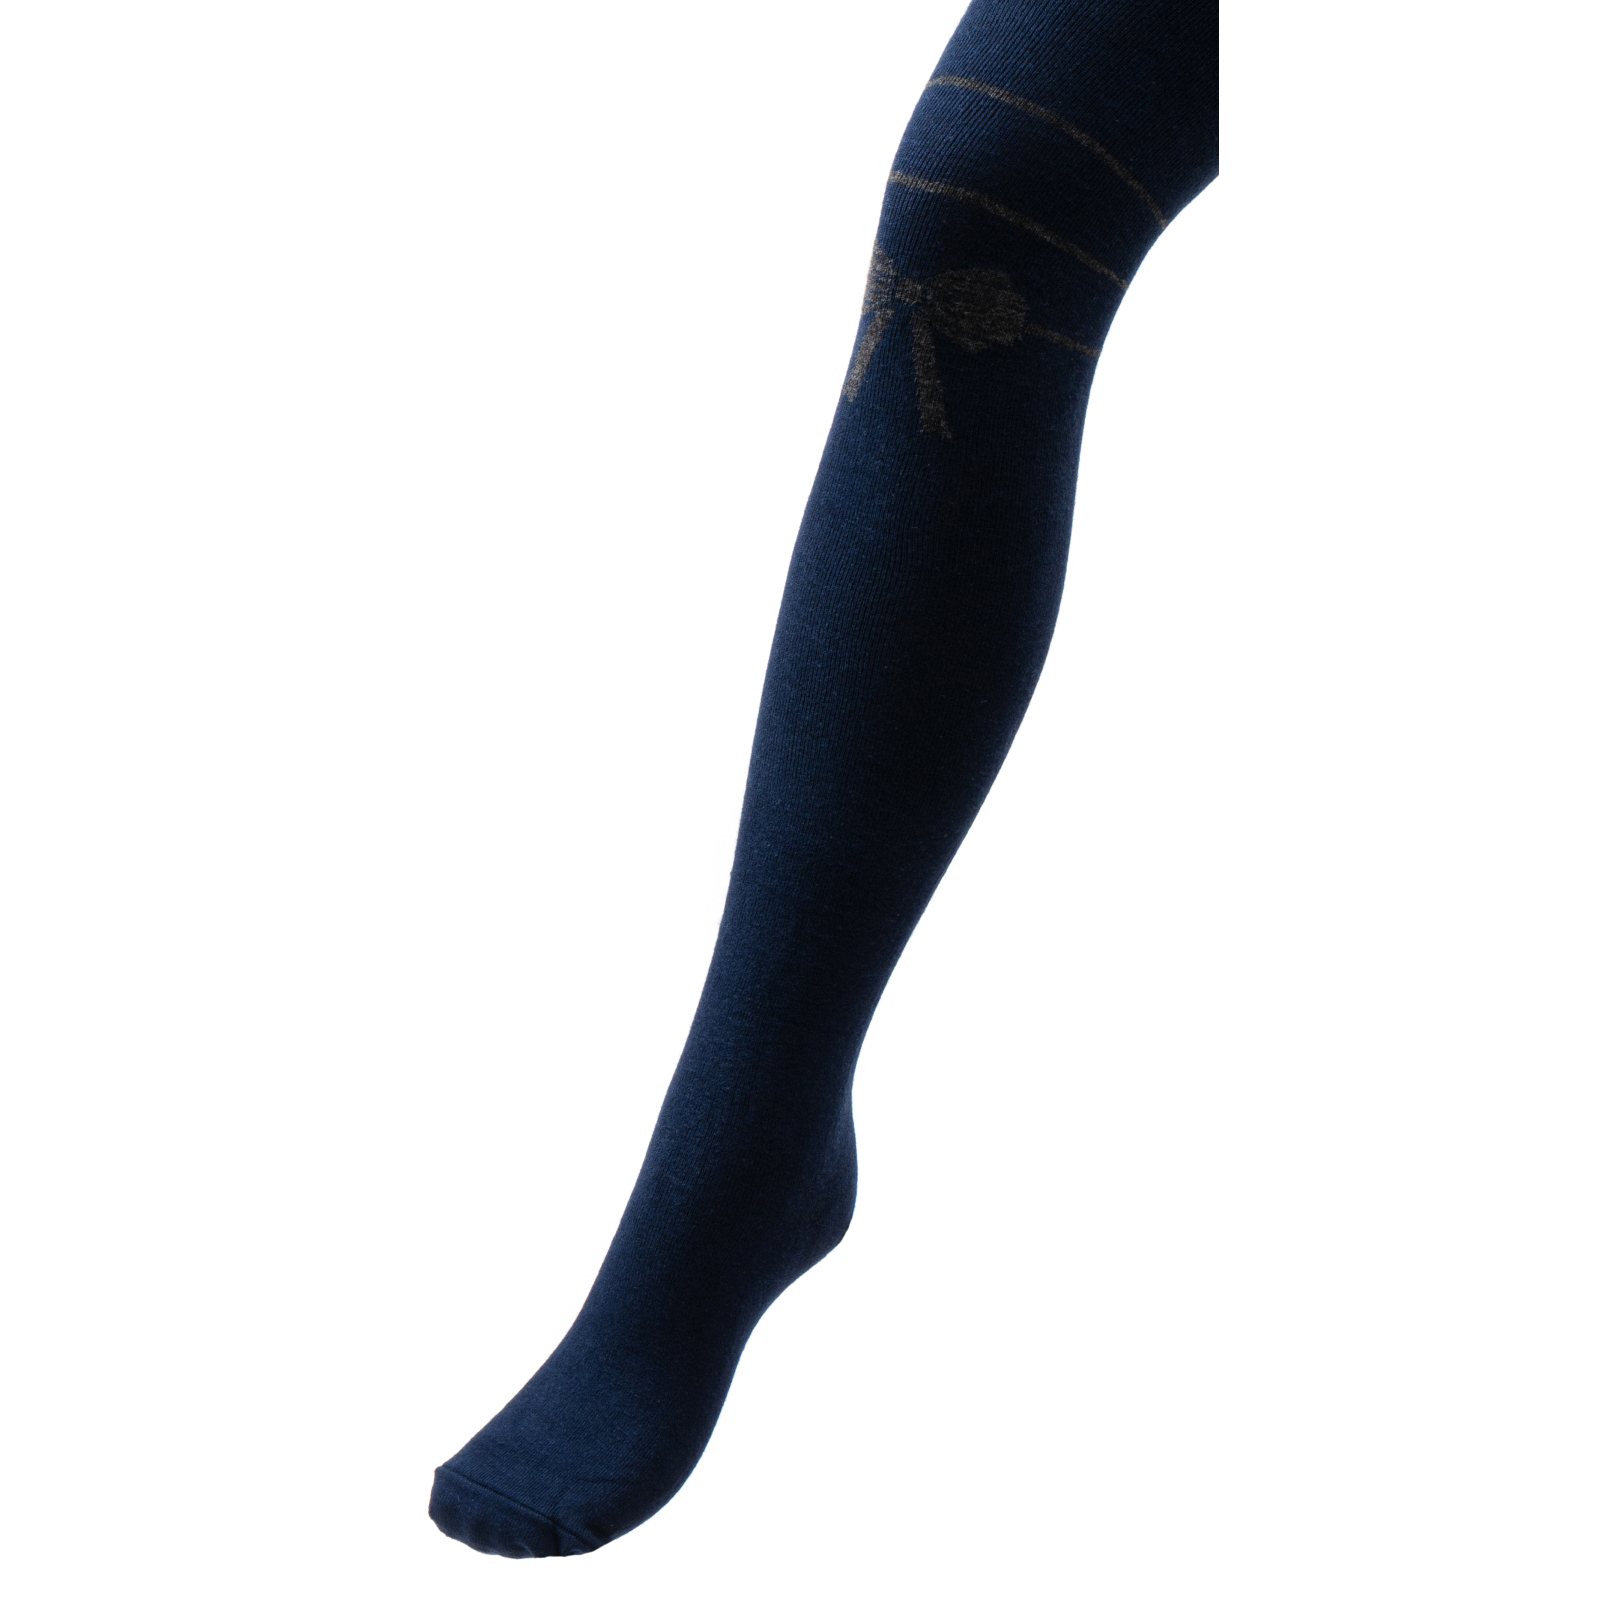 Колготки UCS Socks с бантом (M0C0301-1441-11G-white)